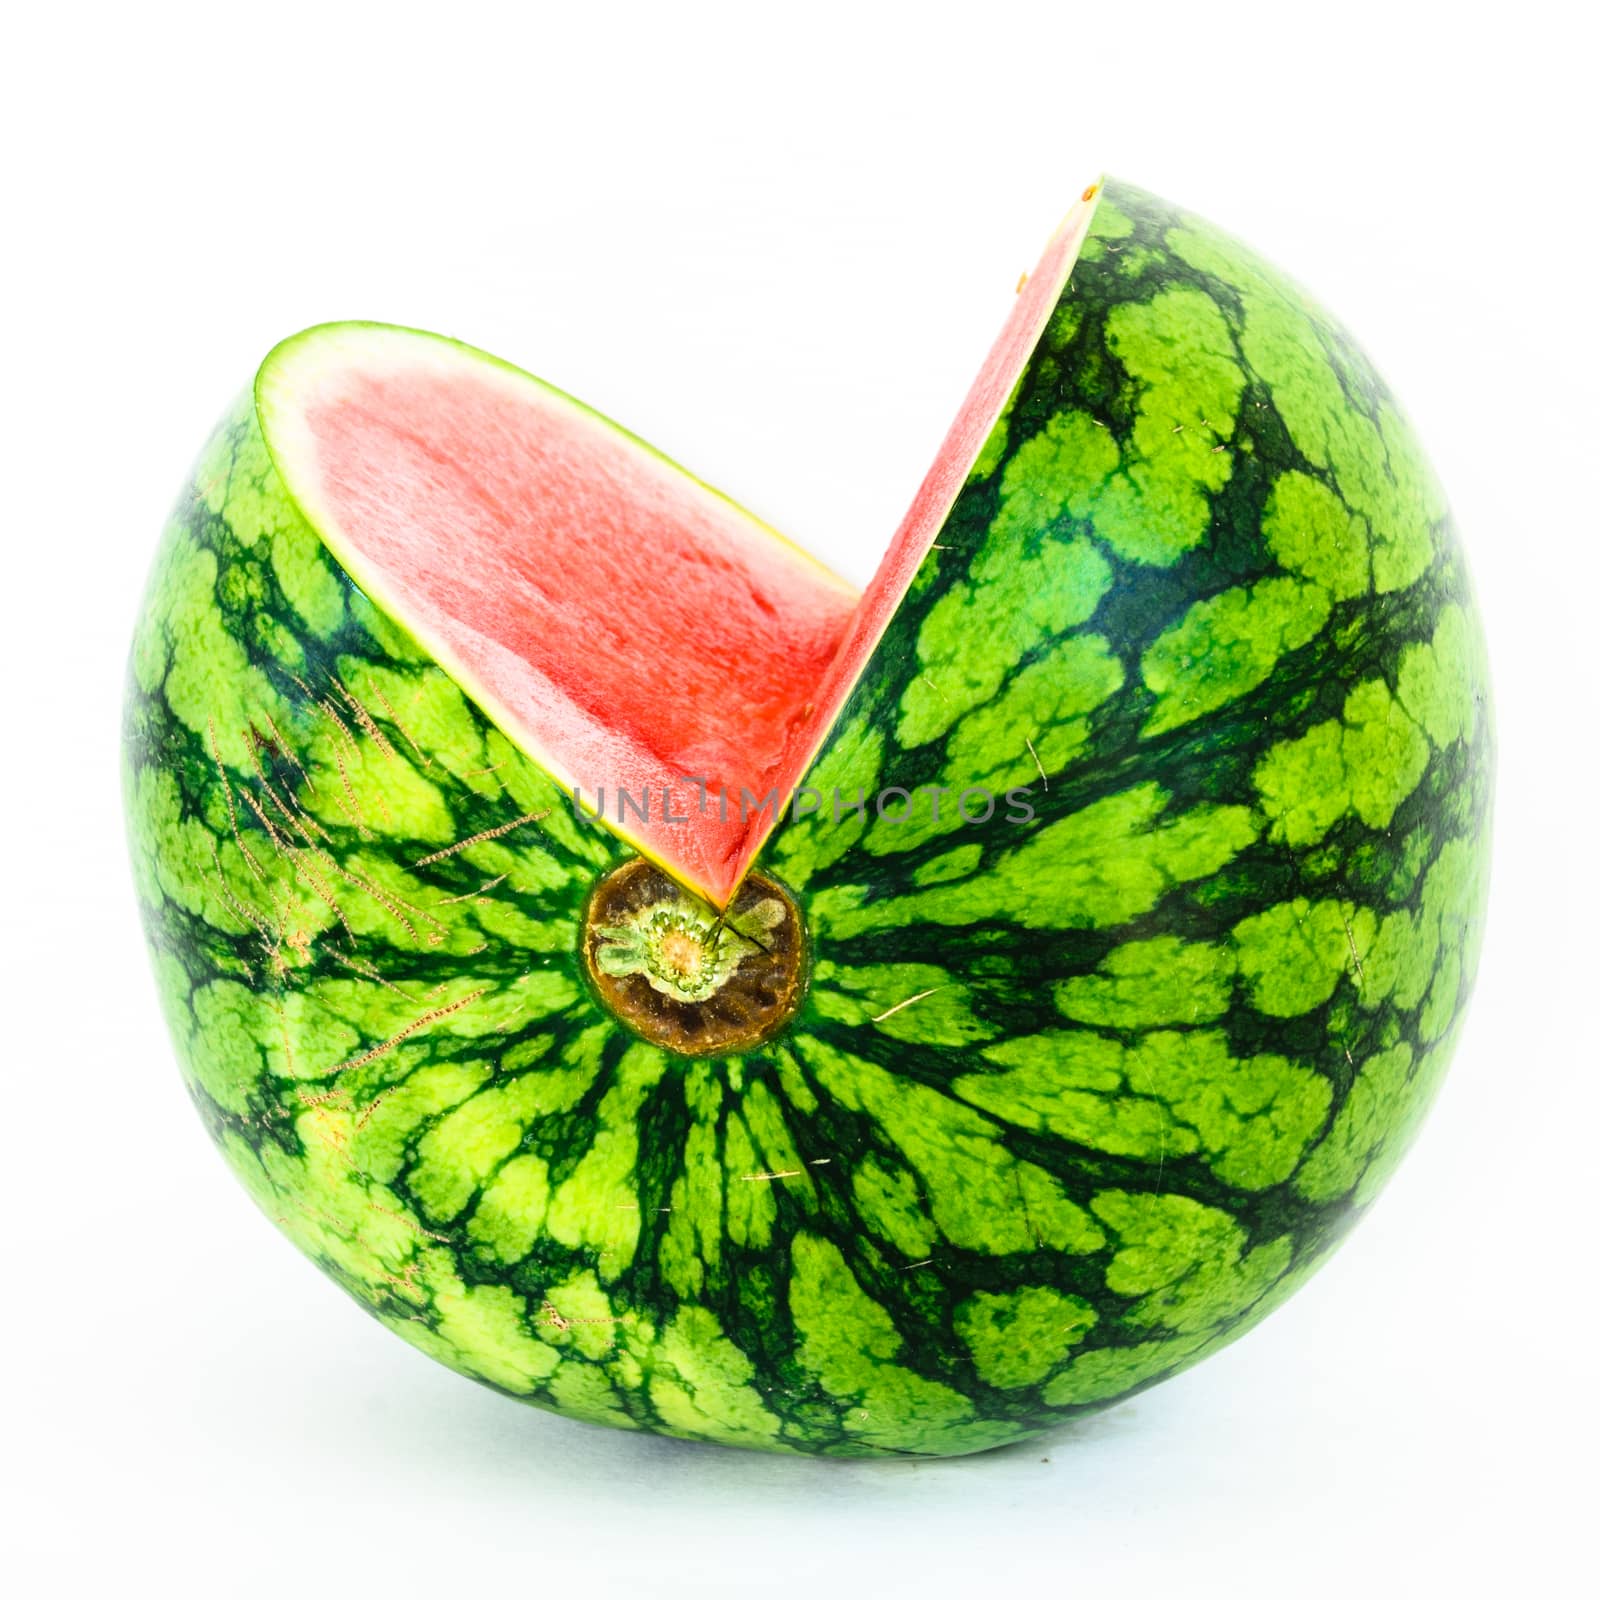 Studio shot cutout mini organic watermelon isolate on white by trongnguyen